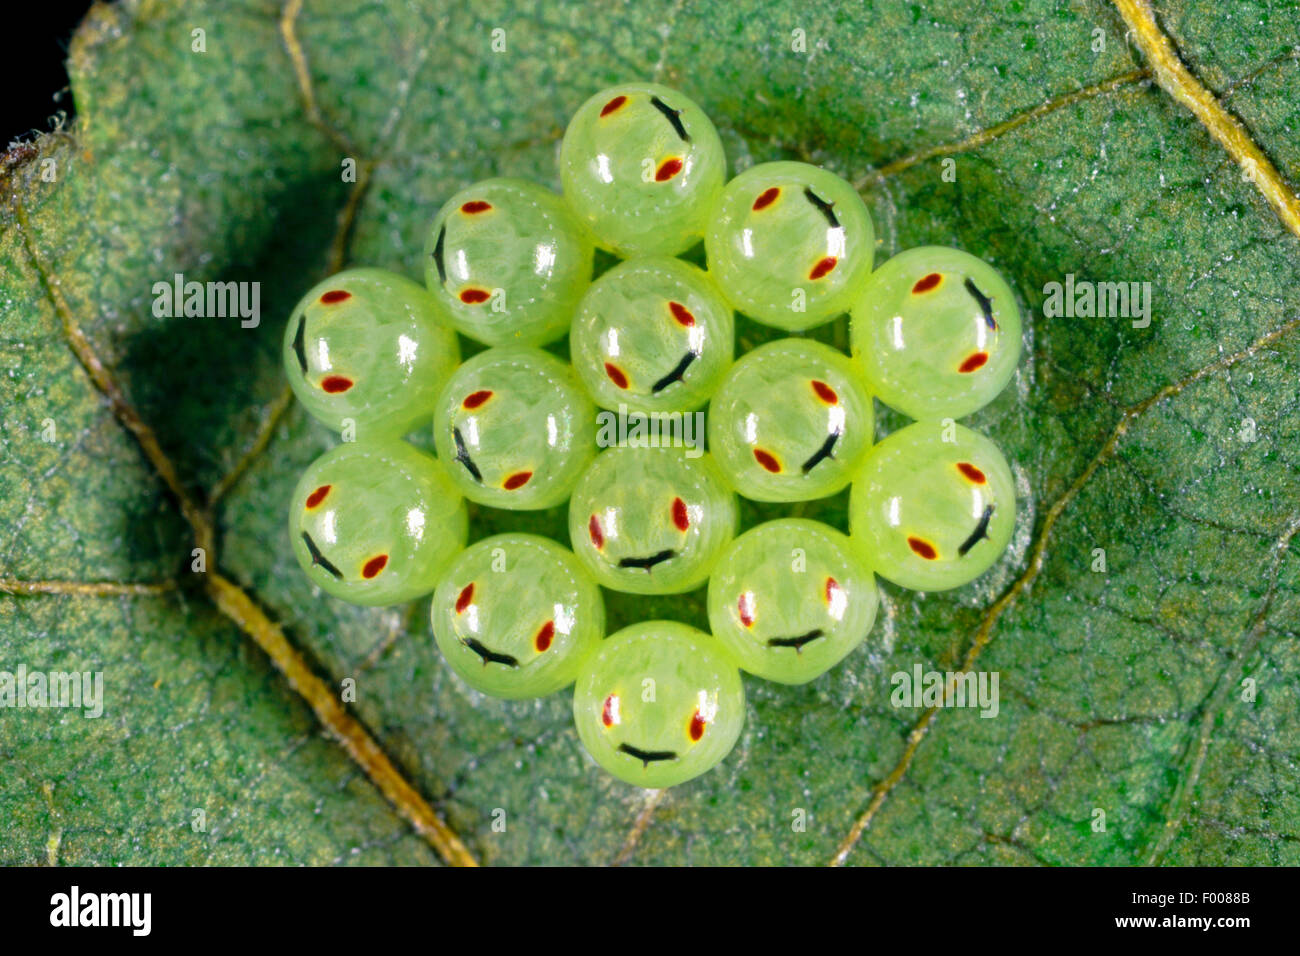 Grünes Schild Bug, gemeinsamen grünen Schild Bug (Palomena Prasina), Eiern unter ein Blatt, Larven in den Eiern sichtbar, Deutschland Stockfoto